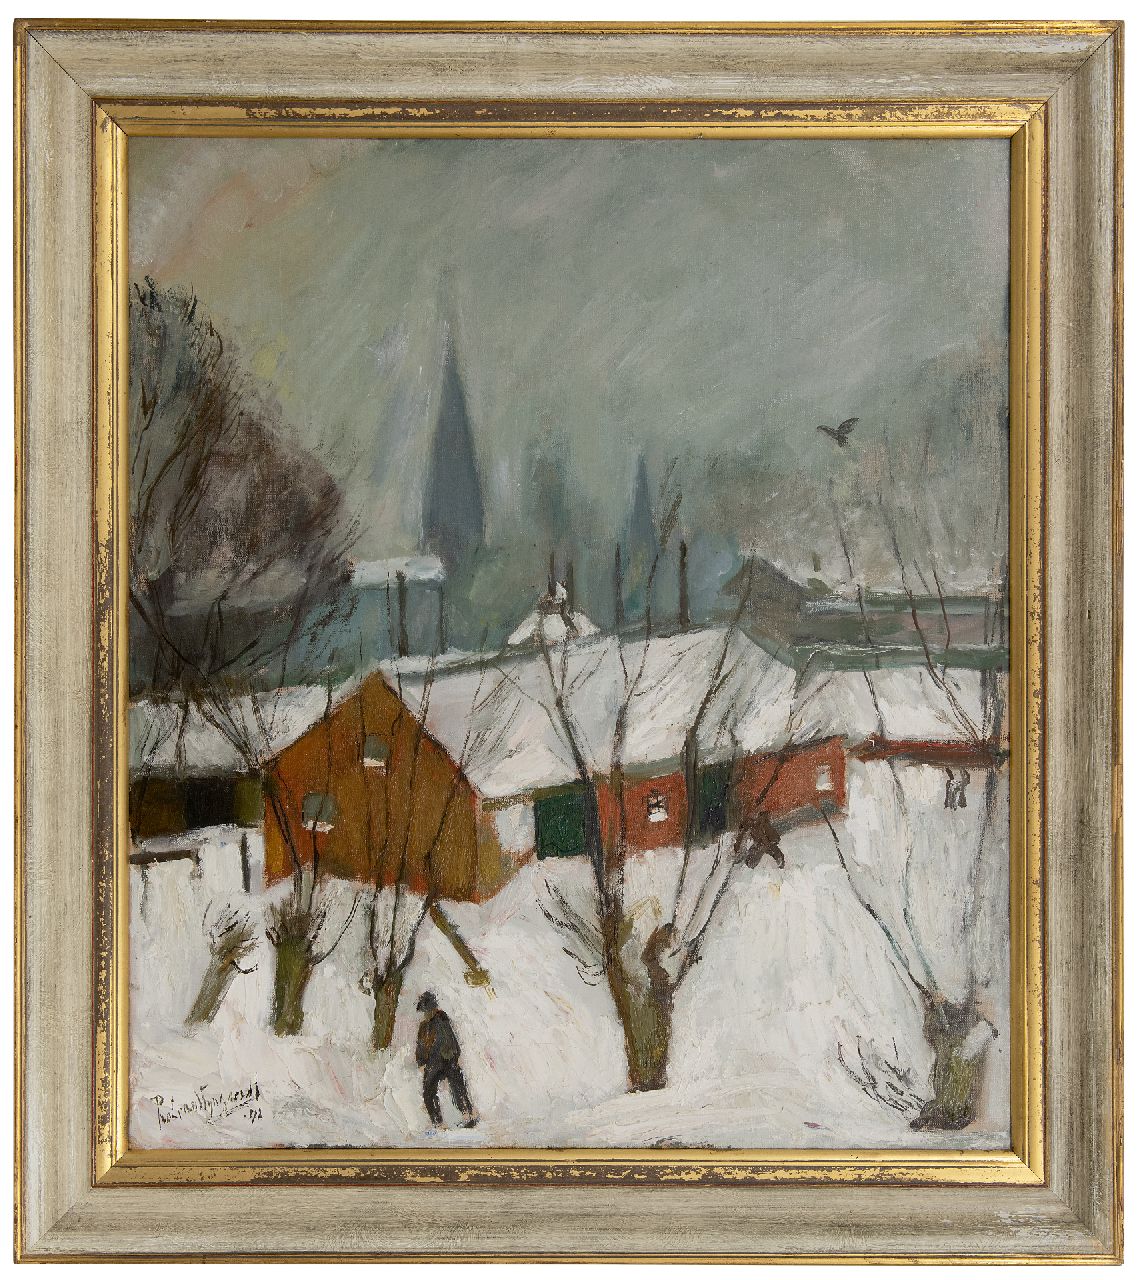 Wijngaerdt P.T. van | Petrus Theodorus 'Piet' van Wijngaerdt, Winter in Abcoude, February 1942 (Homage to Pieter Breughel), oil on canvas 78.3 x 68.8 cm, signed l.l. and dated '42